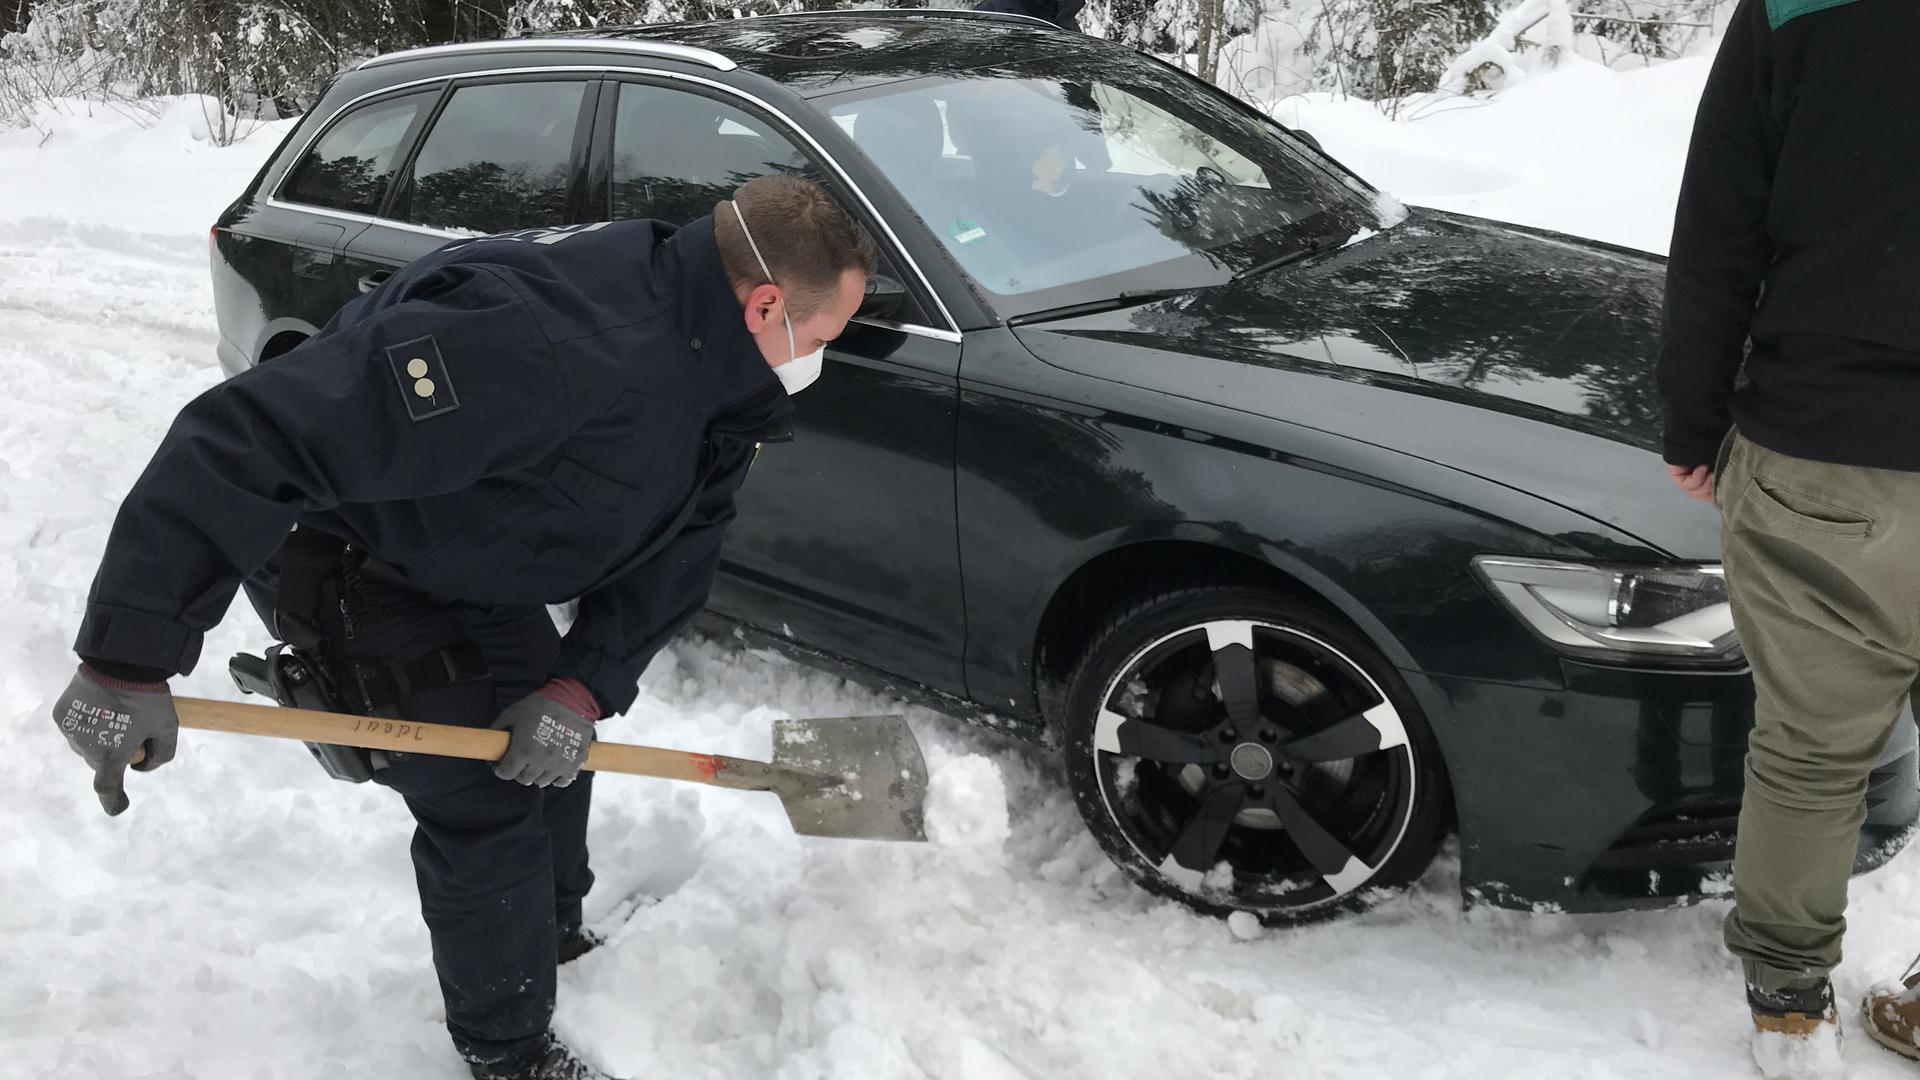 Freund und Pannenhelfer: Robert Gruß räumt mit seinem Spaten einen Audi frei, der im Neuschnee liegengeblieben ist. Derartige Einsätze hatte der Bereitschaftspolizist aus Kraichtal am Wochenende öfters.